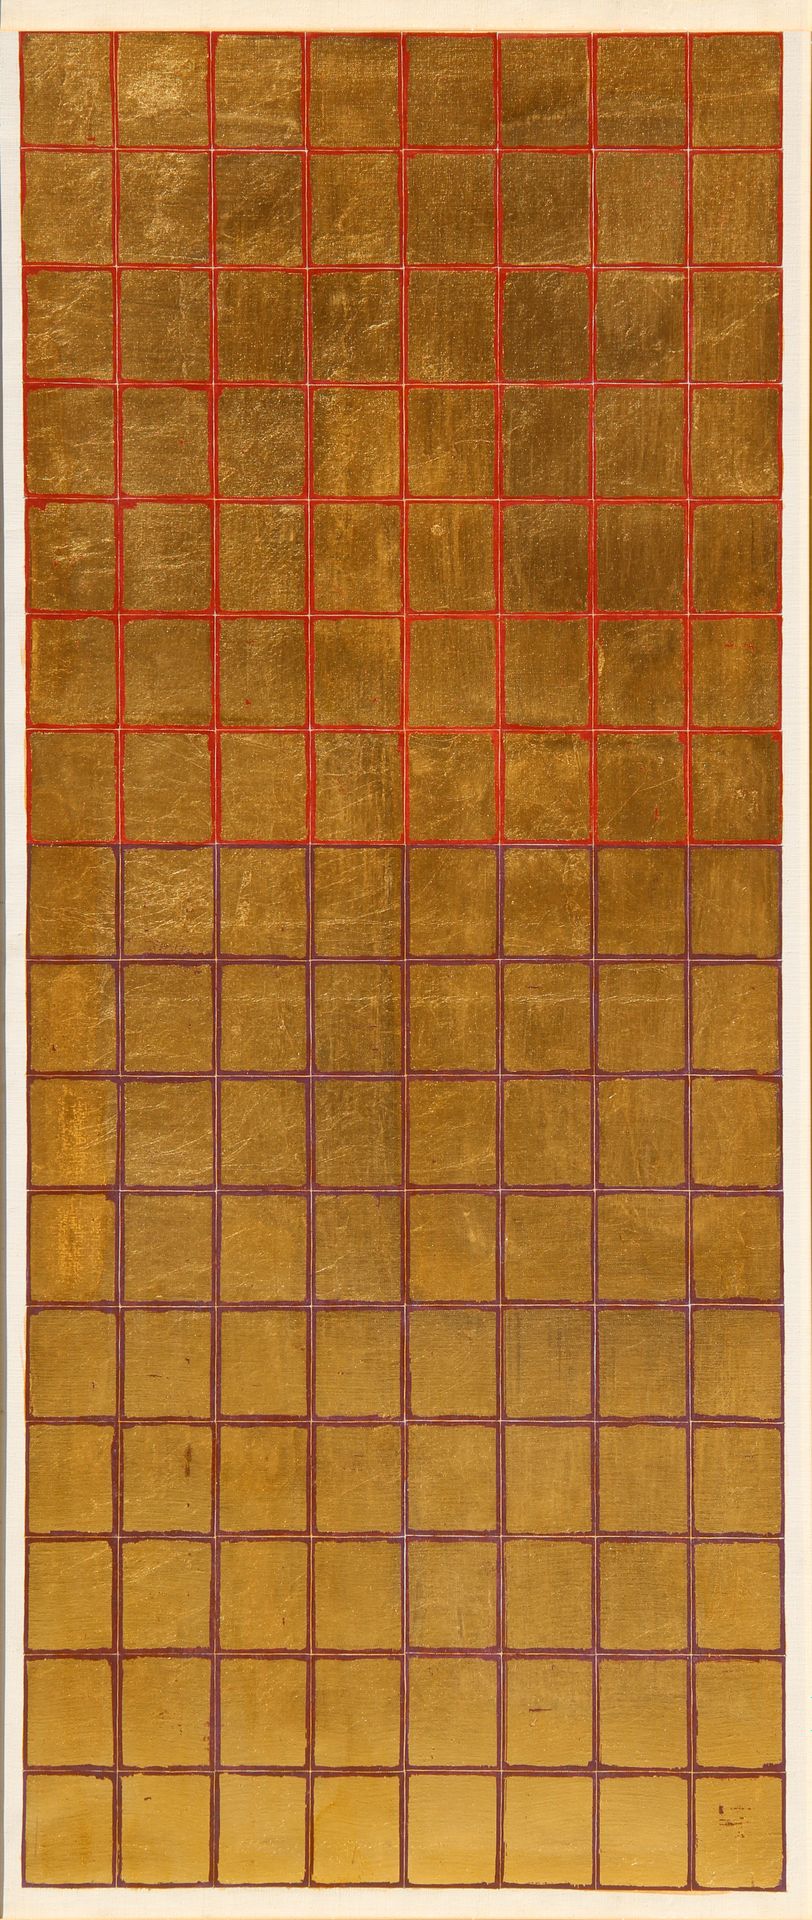 Remo BIANCO Tableau doré 1980er Jahre, Acryl auf Leinwand, cm. 120x50

Das Werk &hellip;